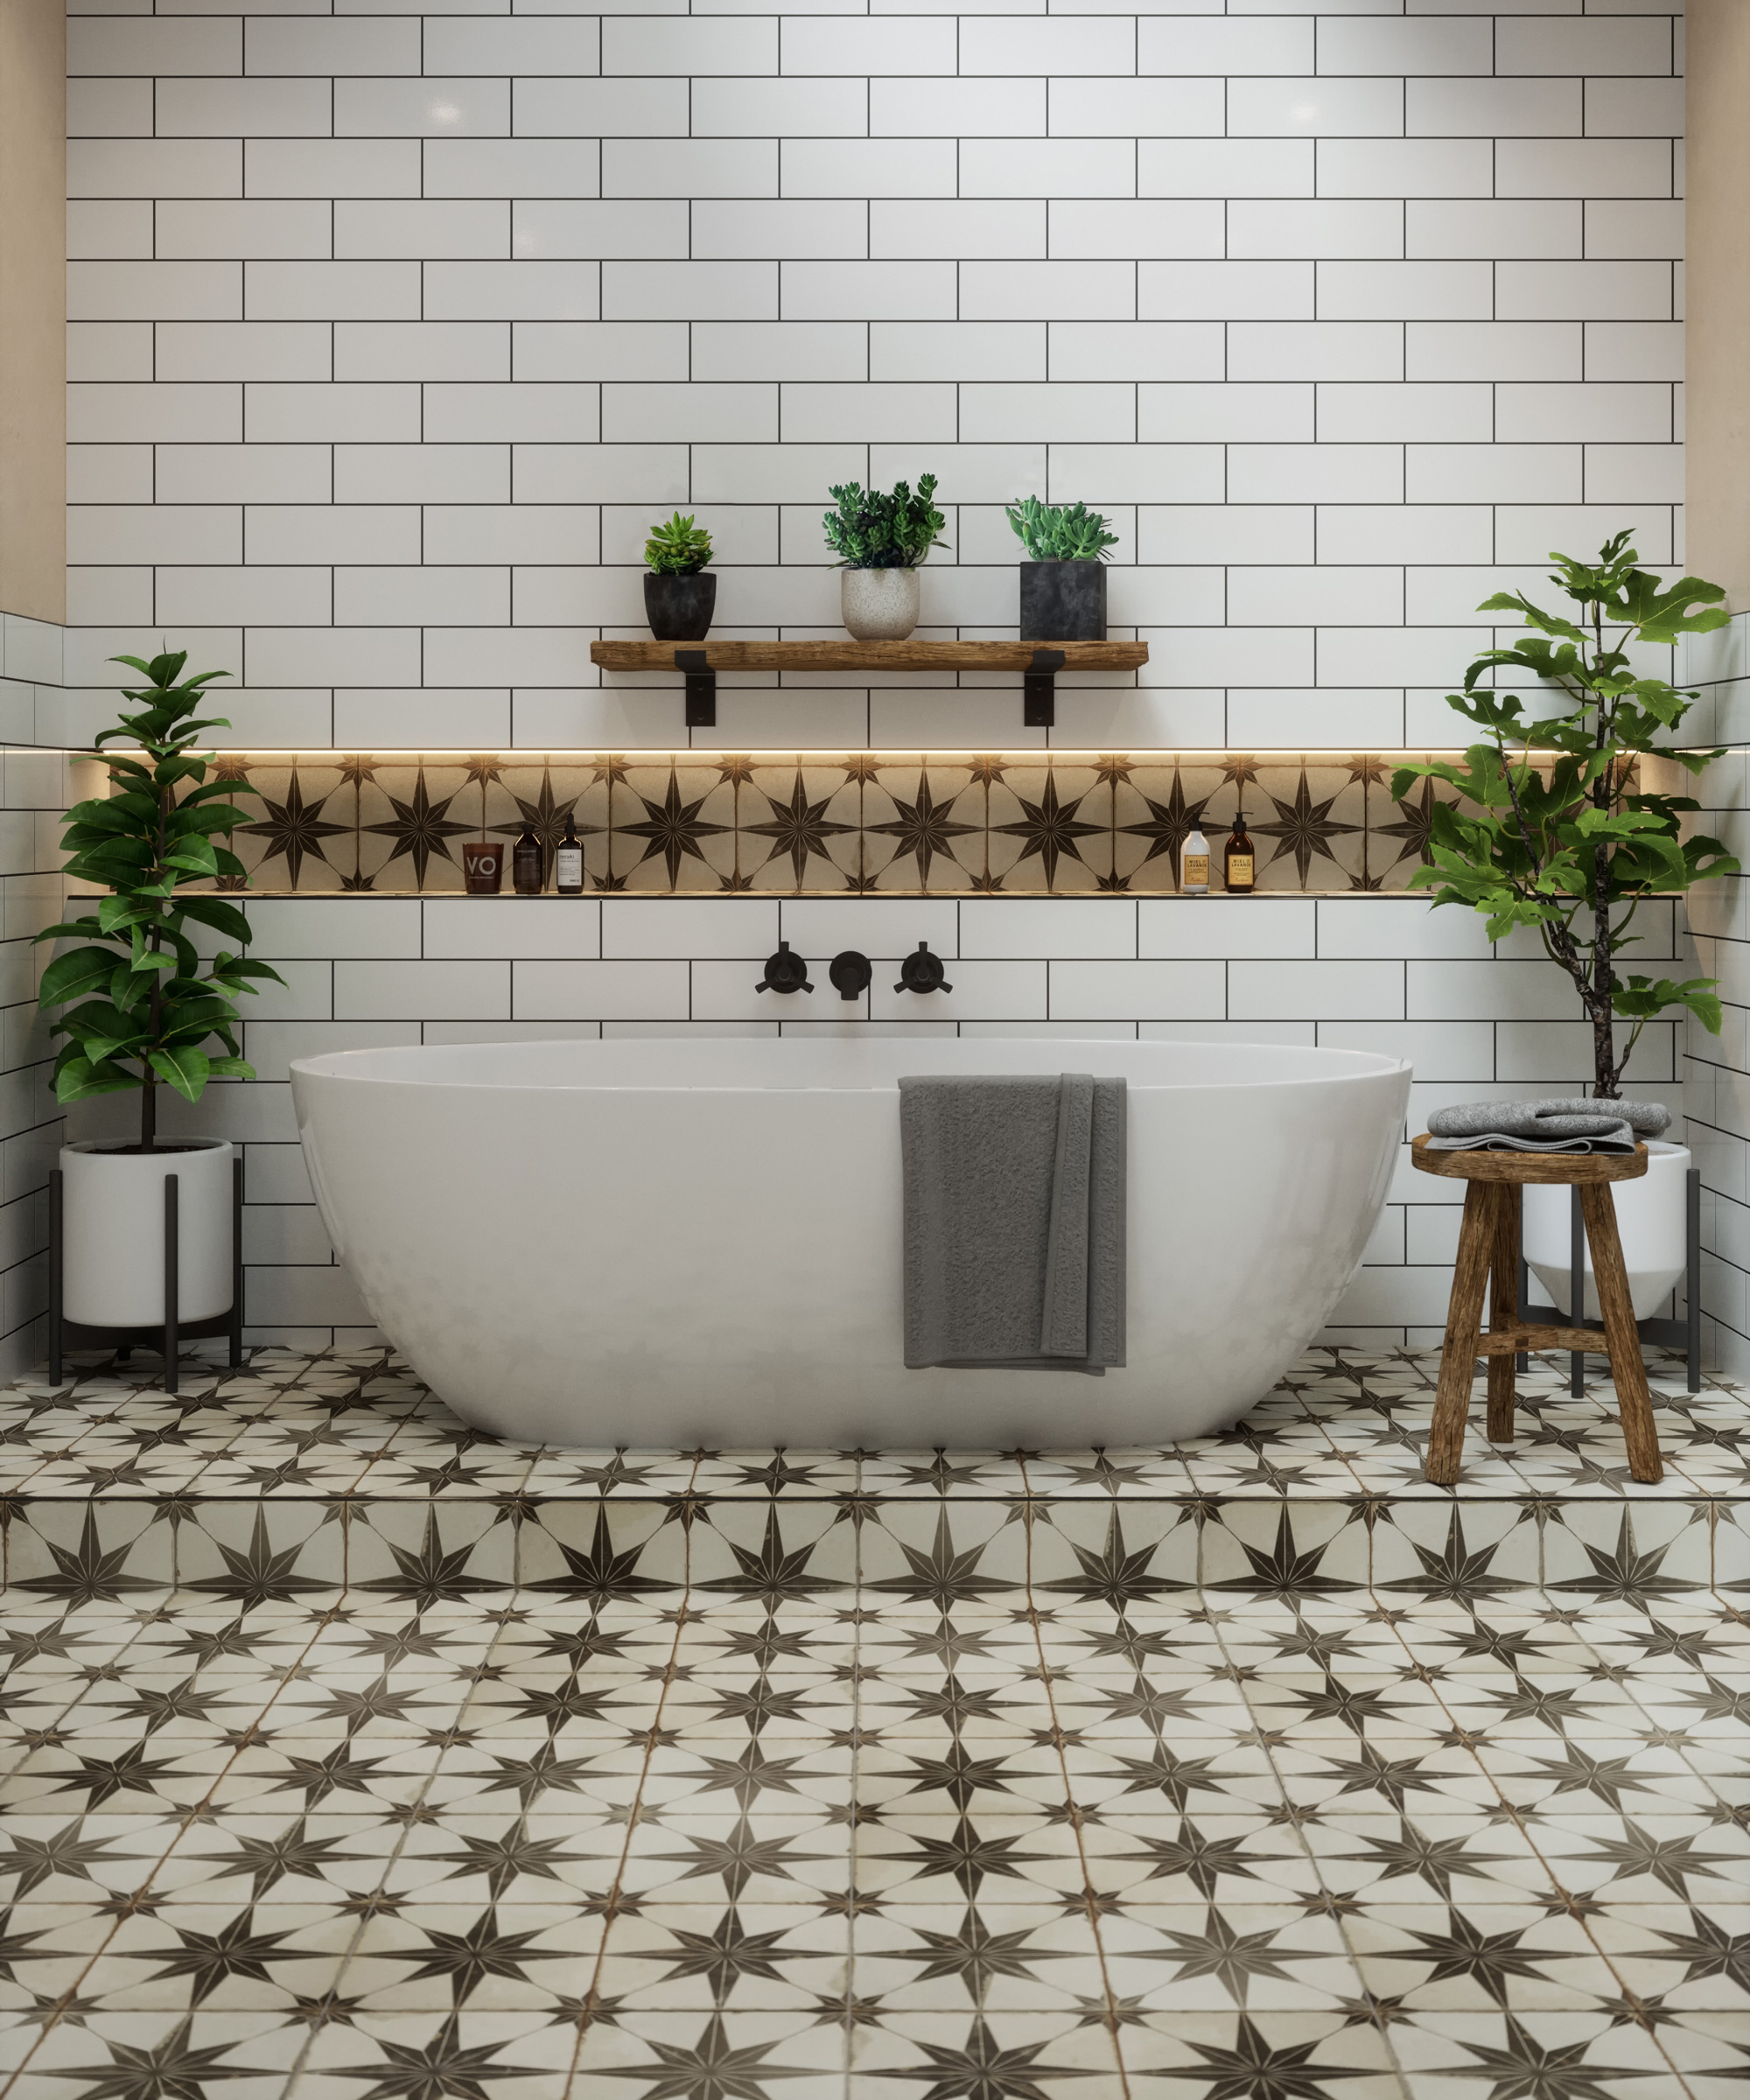 Bathroom Tile Ideas 32 New Looks To, Bathroom Floor Tiles Ideas Australia